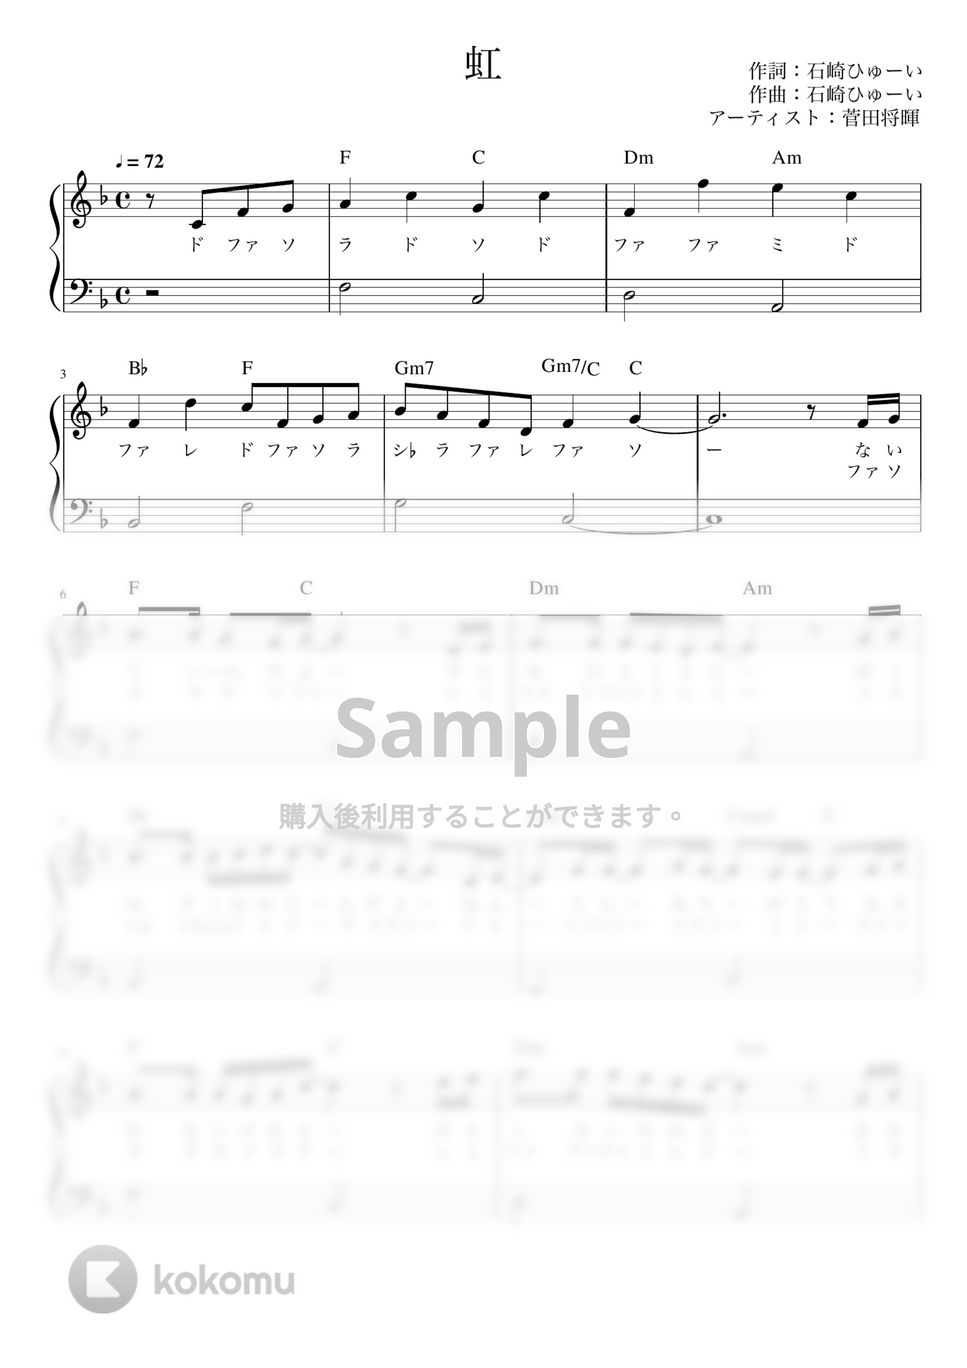 菅田 将暉 - 虹 (ピアノ かんたん 歌詞付き ドレミ付き 初心者) by piano.tokyo